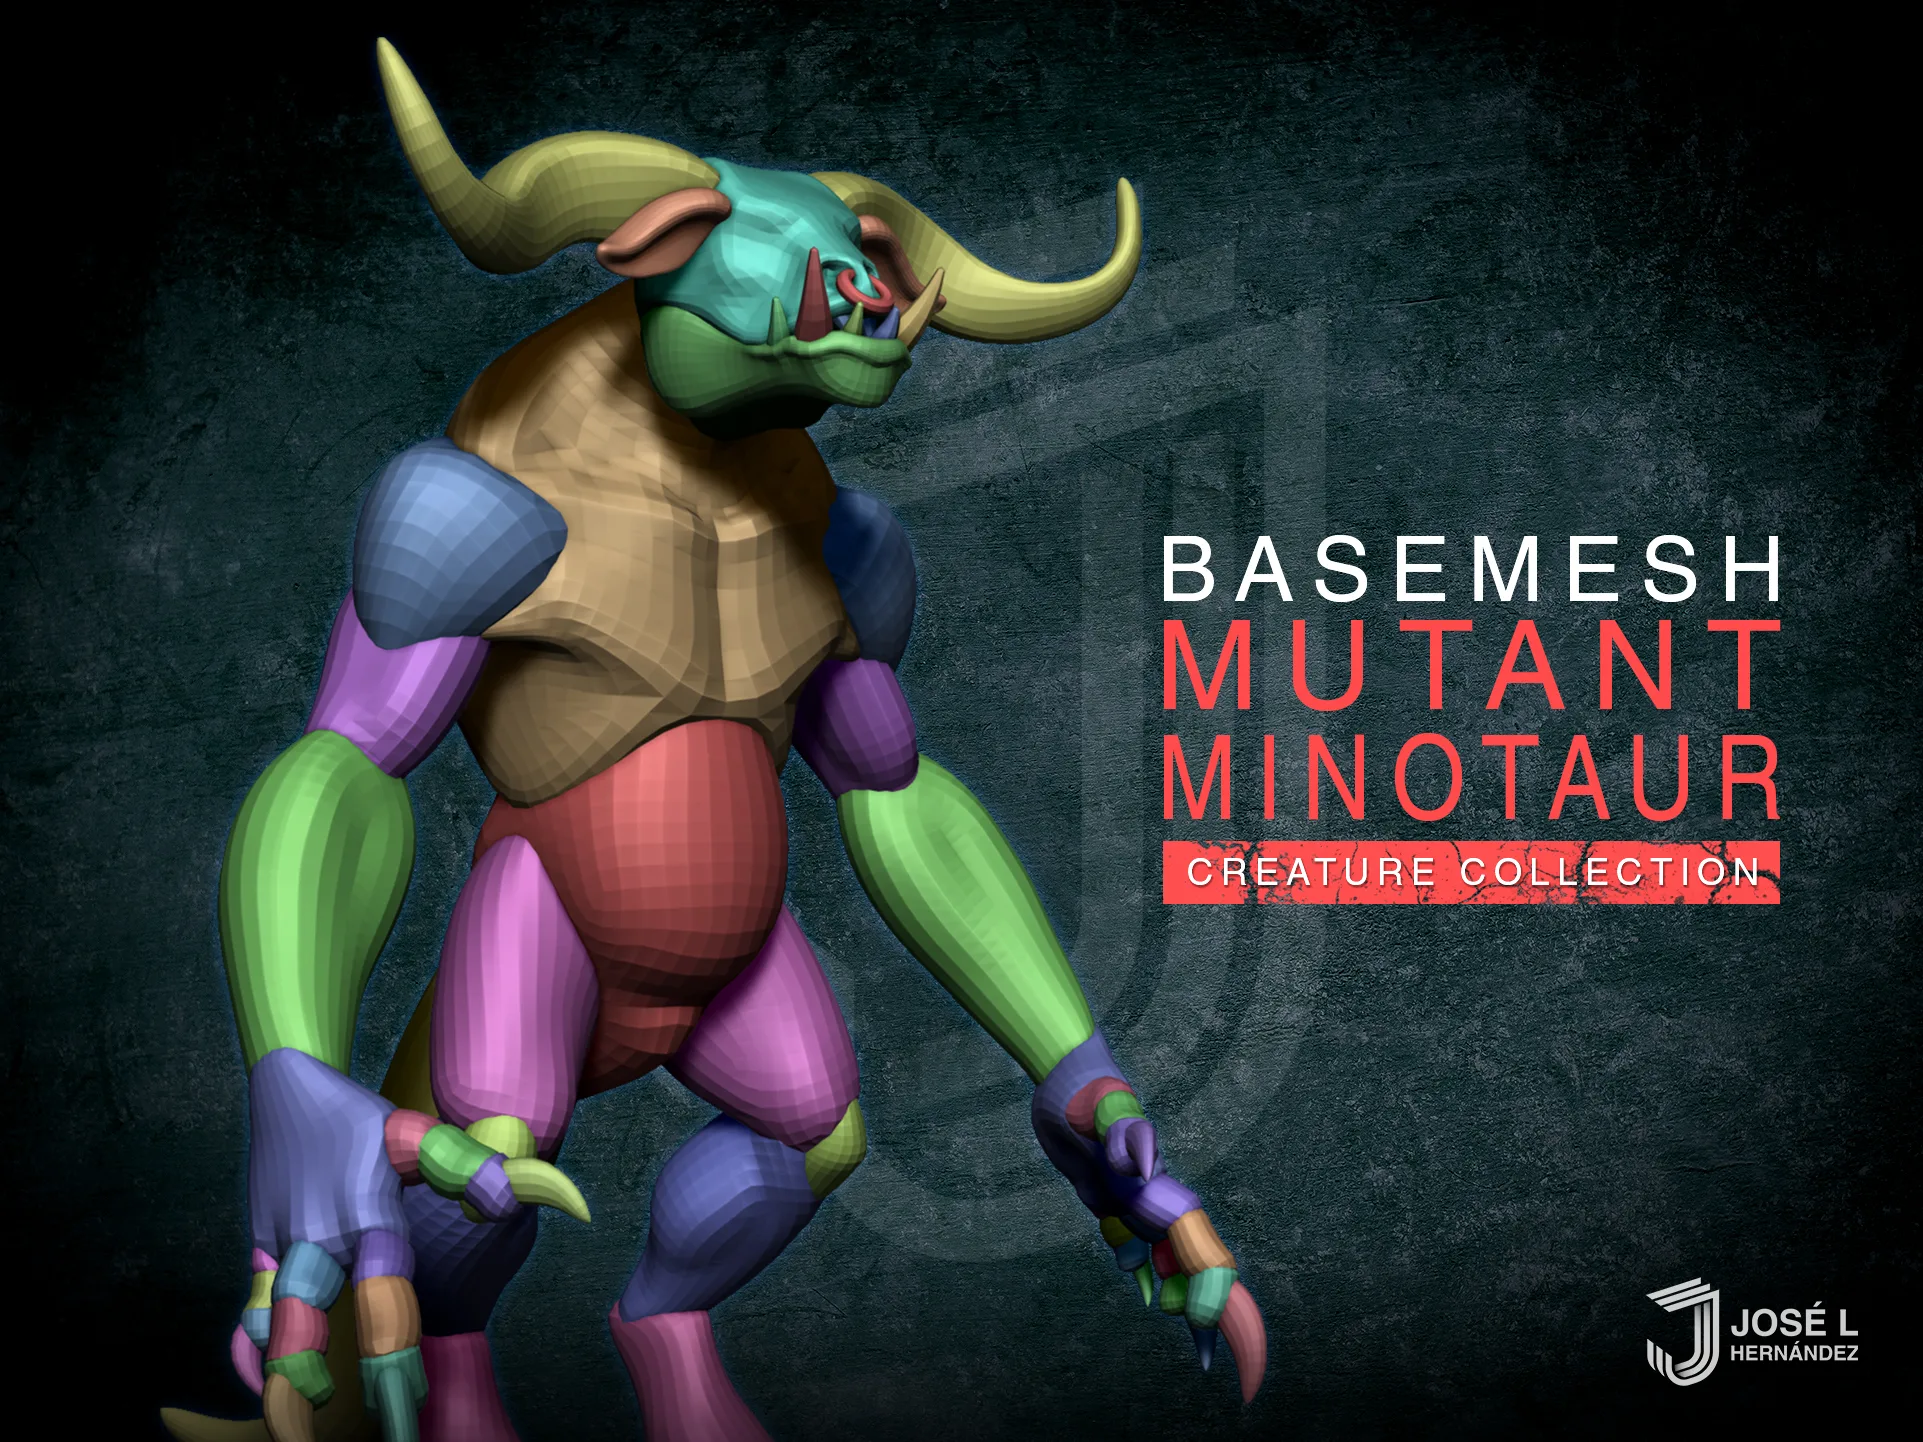 Basemesh Mutant Minotaur